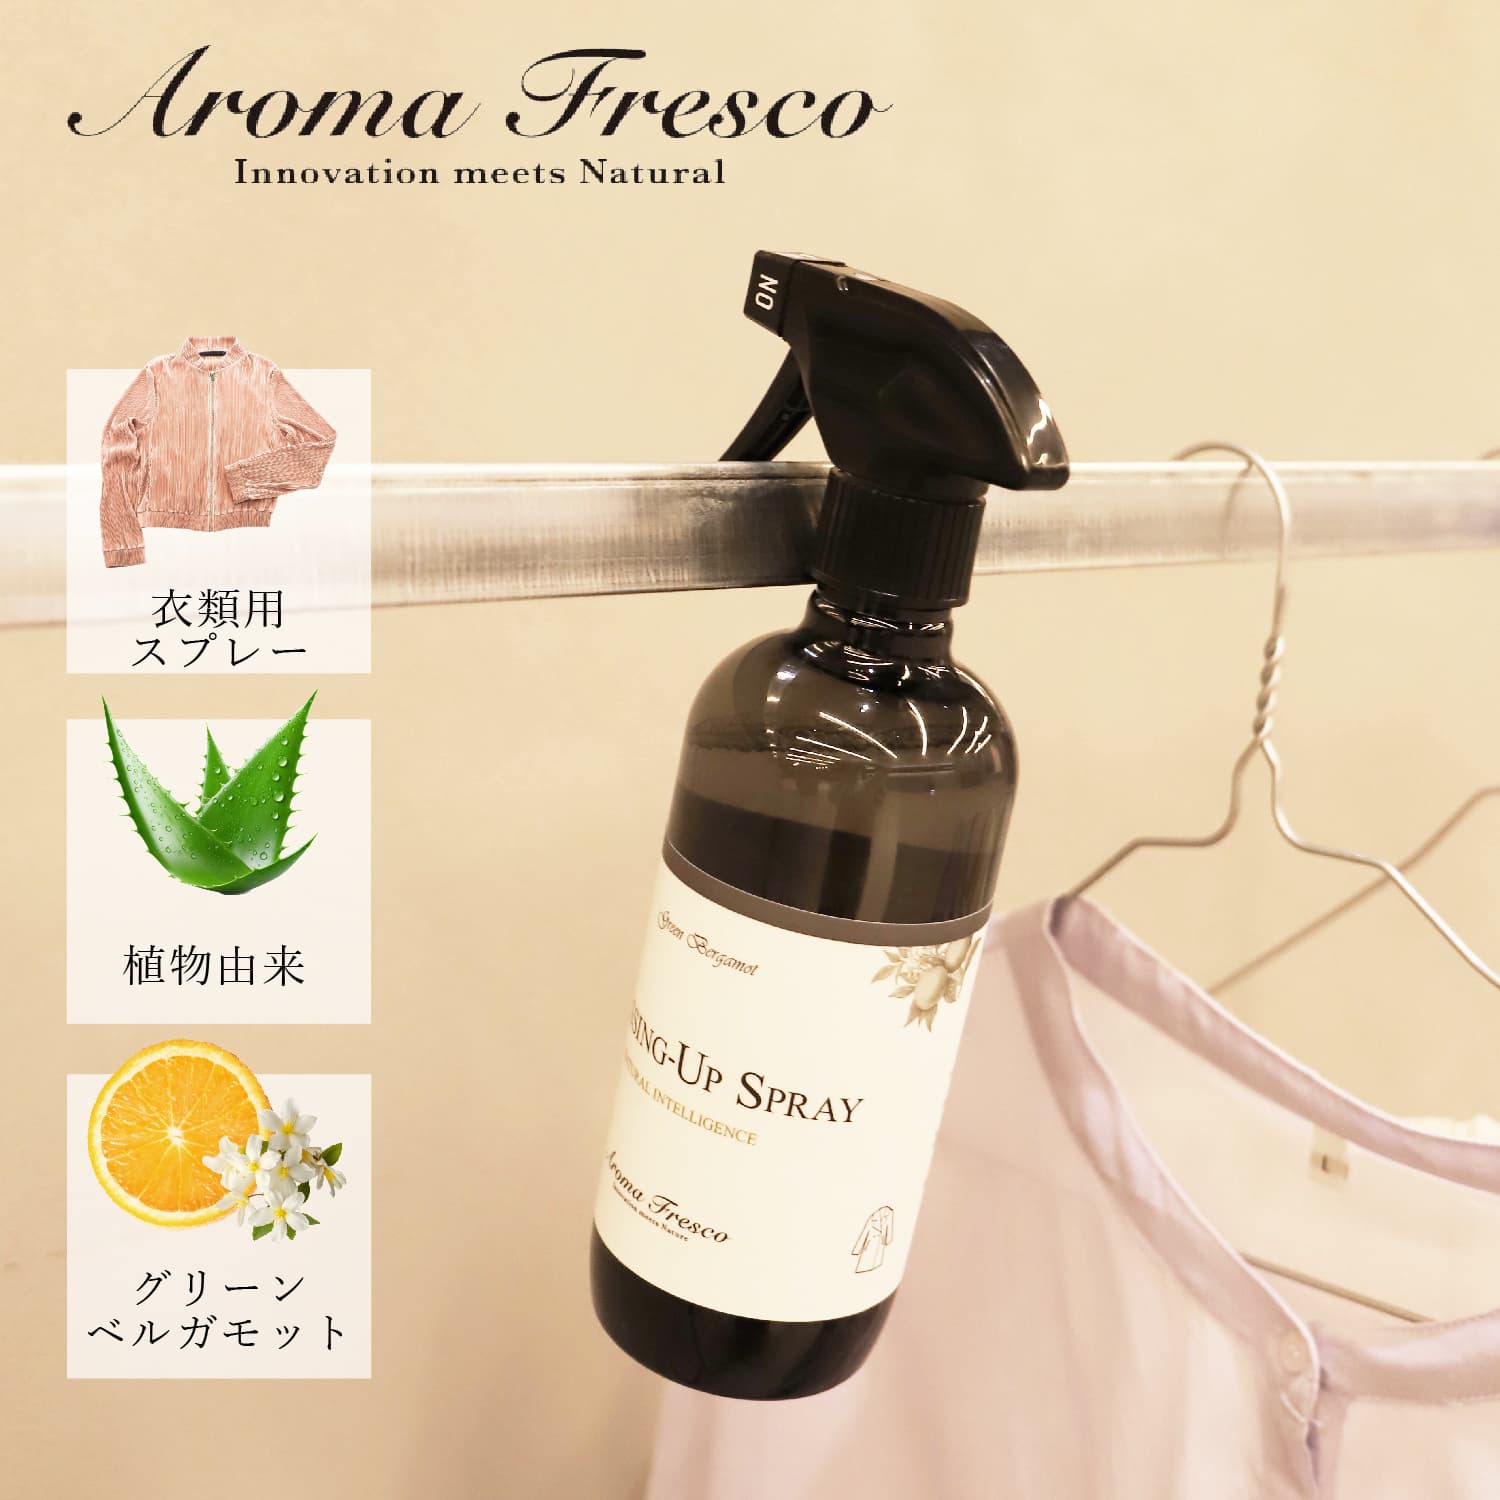 Aroma Fresco アロマフレスコ 洗剤 クリーナー ボトル 衣類用 スプレー 液体 480ml お手入れ フレグランス 植物由来 天然素材 ドレッシングアップスプレー 08000006 母の日